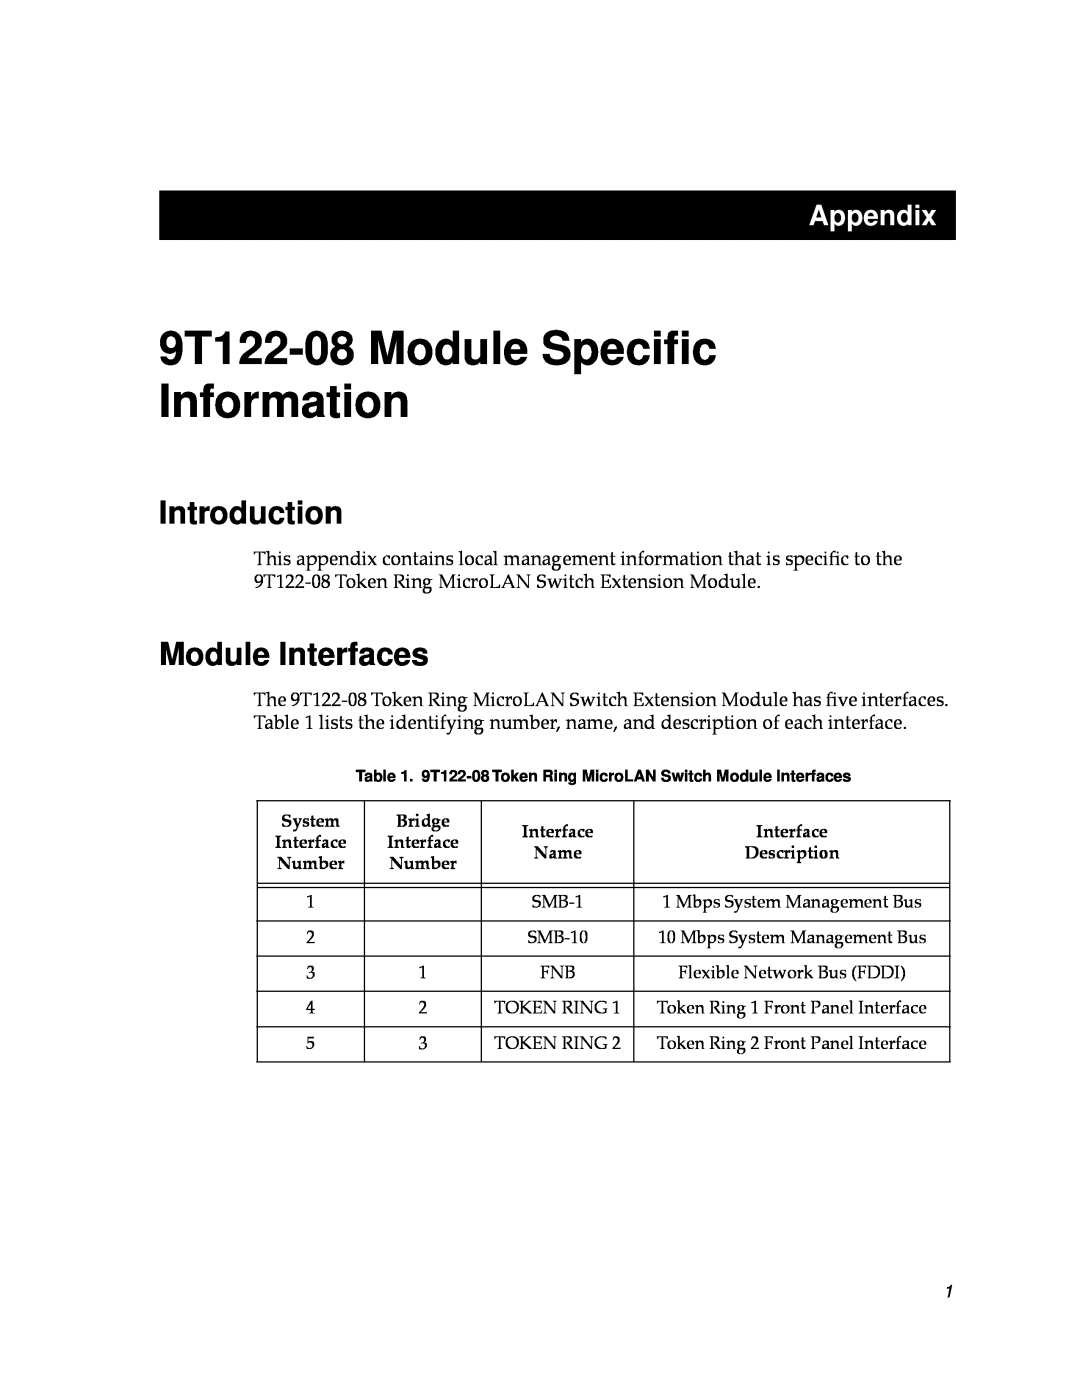 Cabletron Systems appendix Introduction, Module Interfaces, 9T122-08 Module Speciﬁc Information, Appendix 